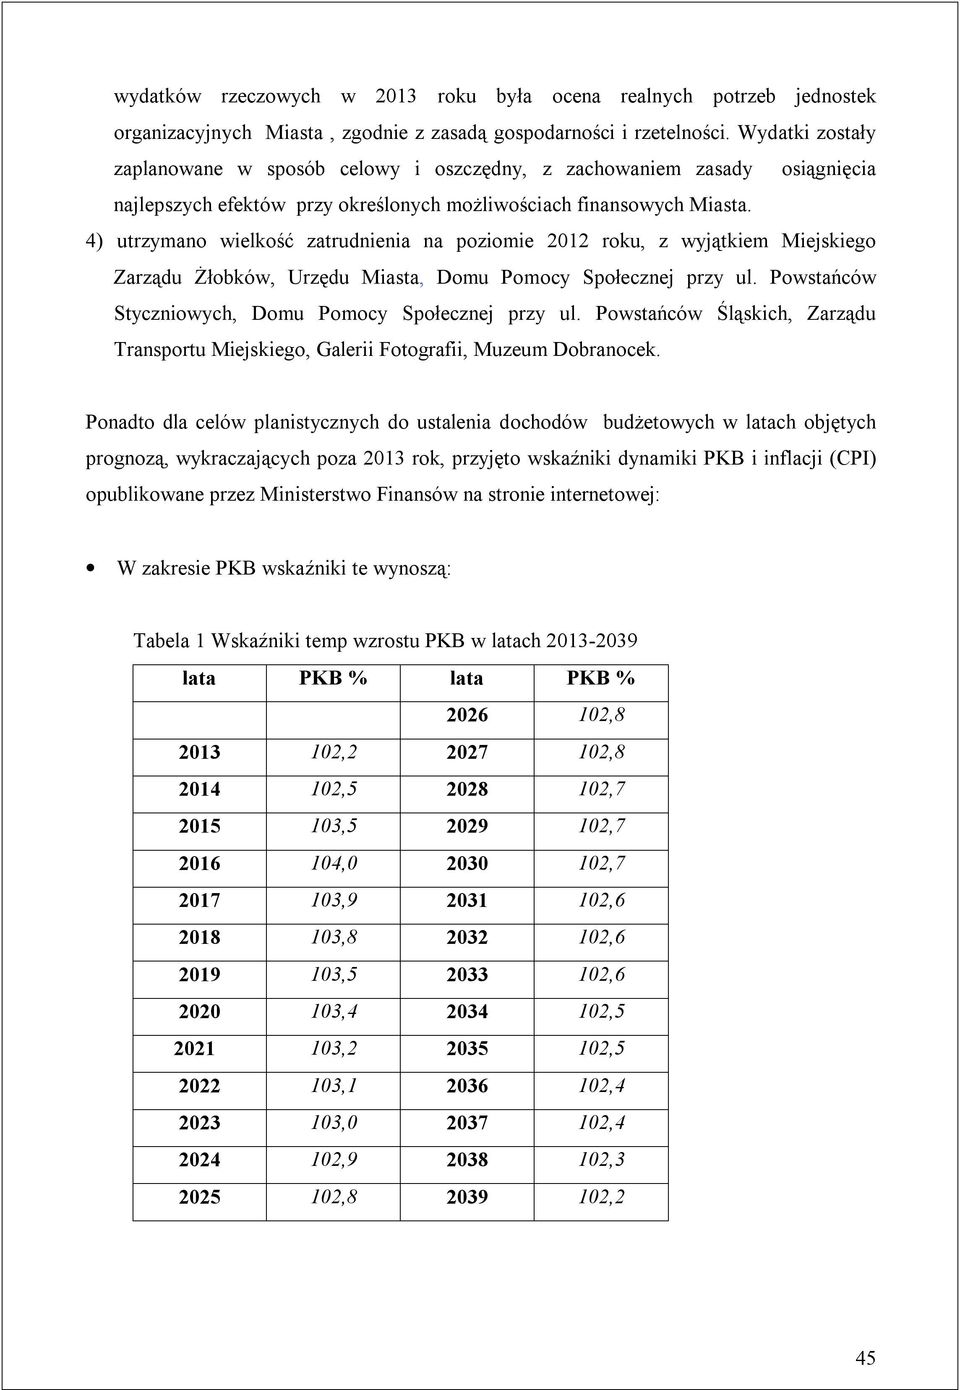 4) utrzymano wielkość zatrudnienia na poziomie 2012 roku, z wyjątkiem Miejskiego Zarządu Żłobków, Urzędu Miasta, Domu Pomocy Społecznej przy ul.